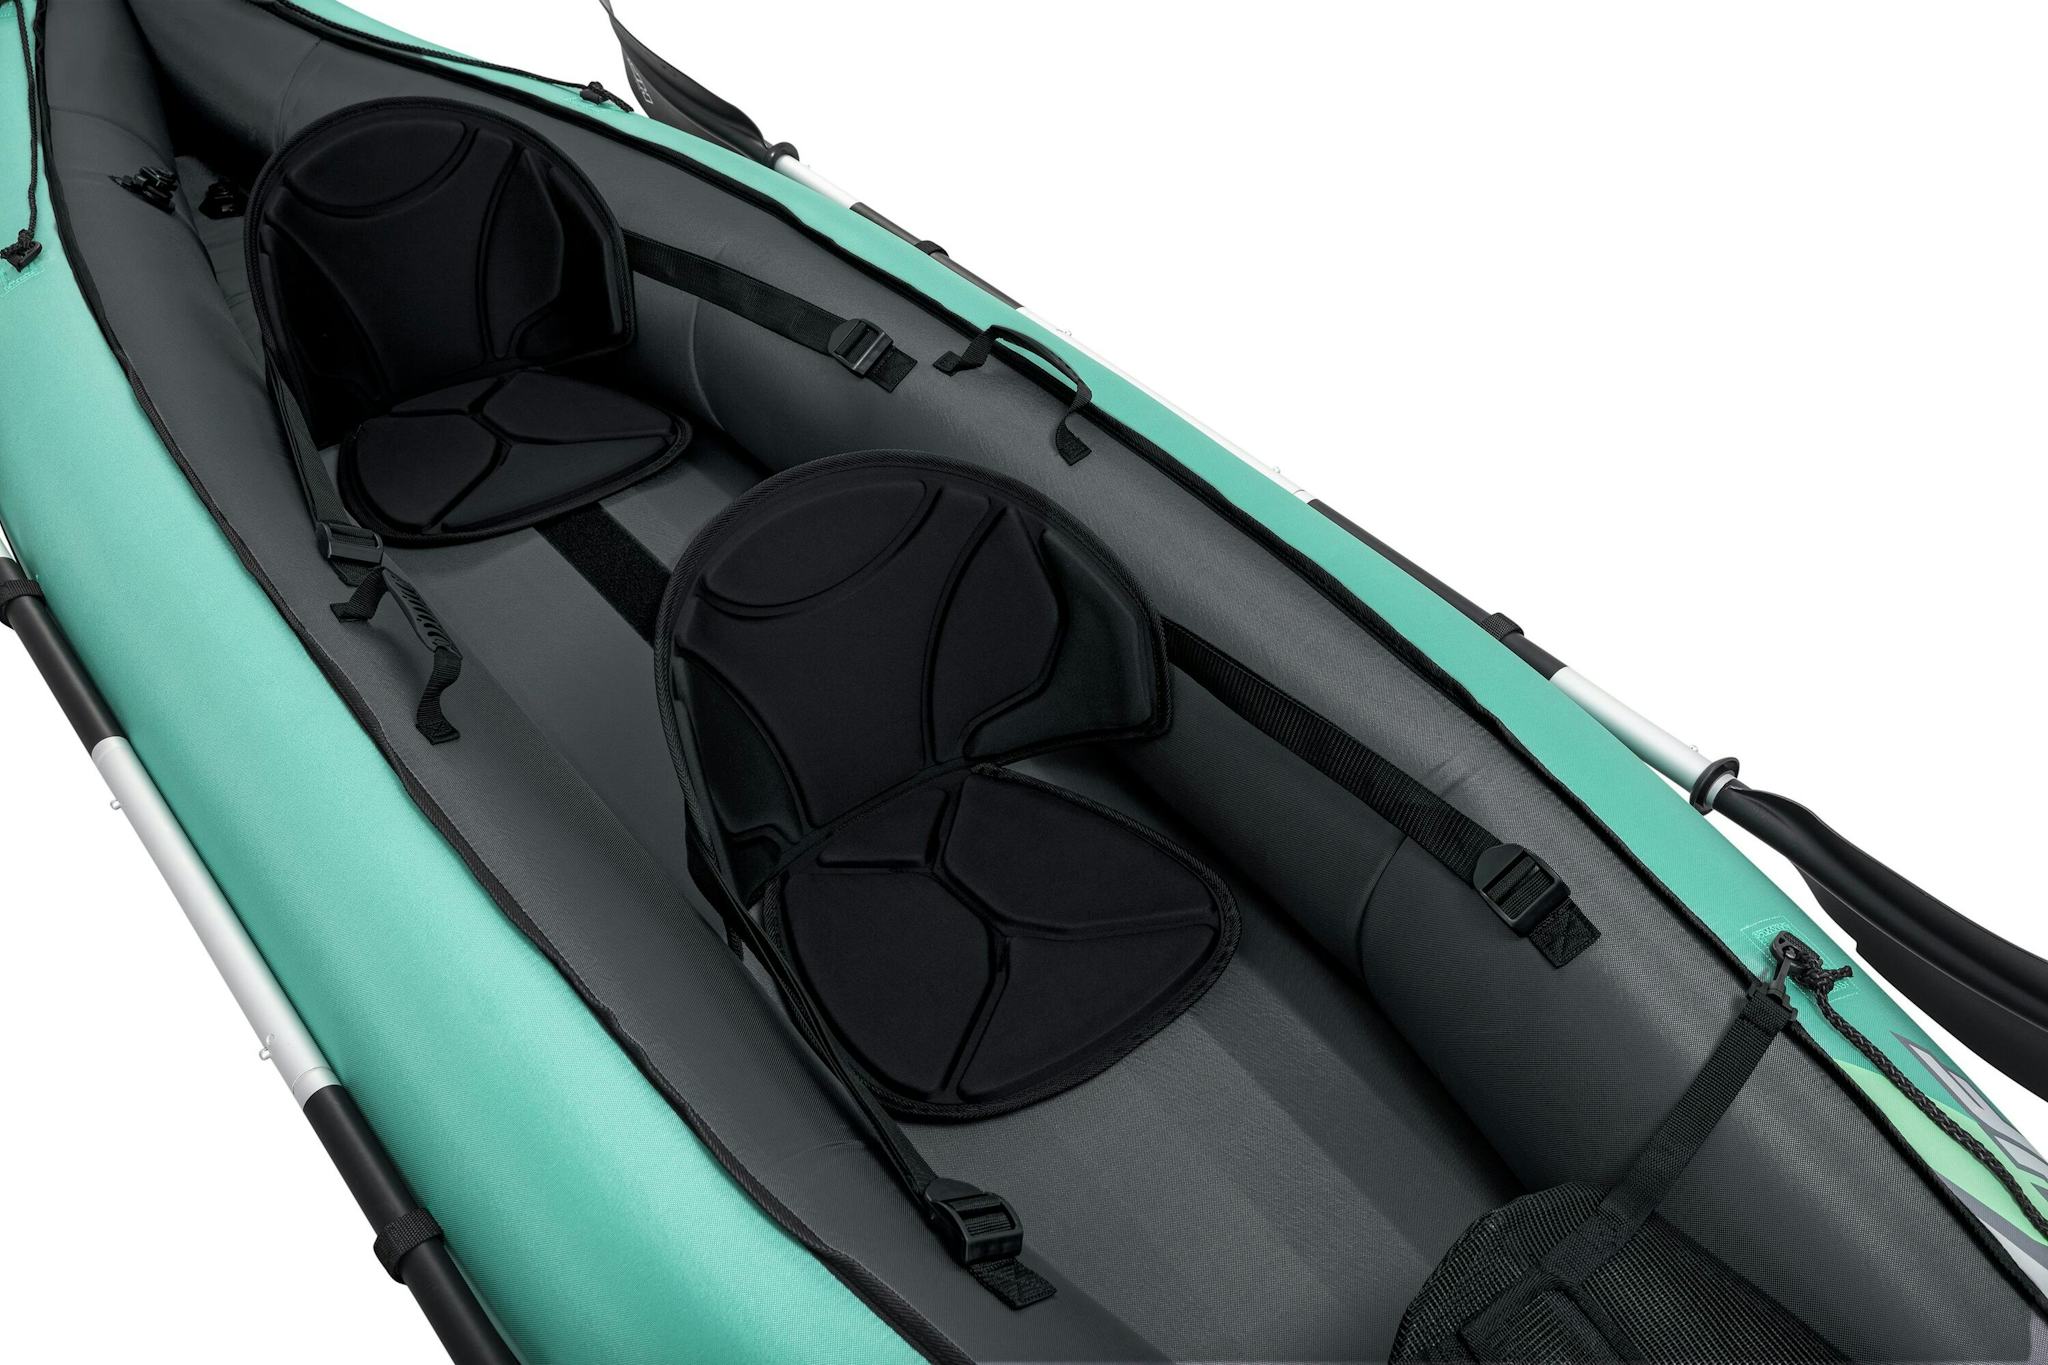 Sports d'eau Kayak gonflable Hydro-Force™ Ventura Elite X2 330 x 86 cm 2 adultes, pagaie, pompe Bestway 8